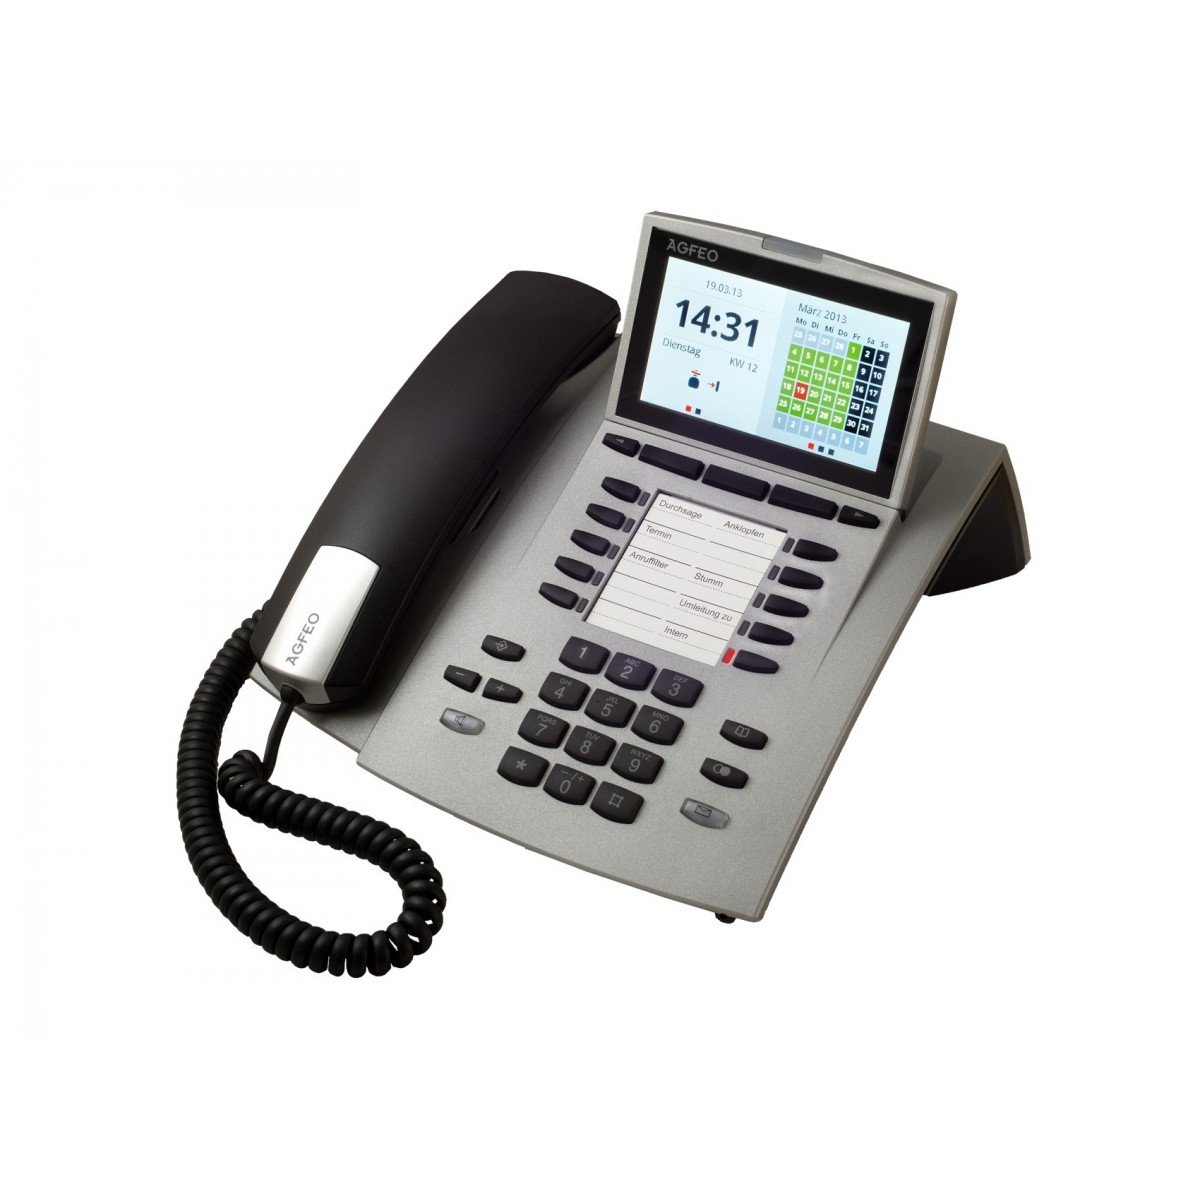 AGFEO ST 45 - Analoges Telefon - 1000 Eintragungen - Anrufer-Identifikation - Silber